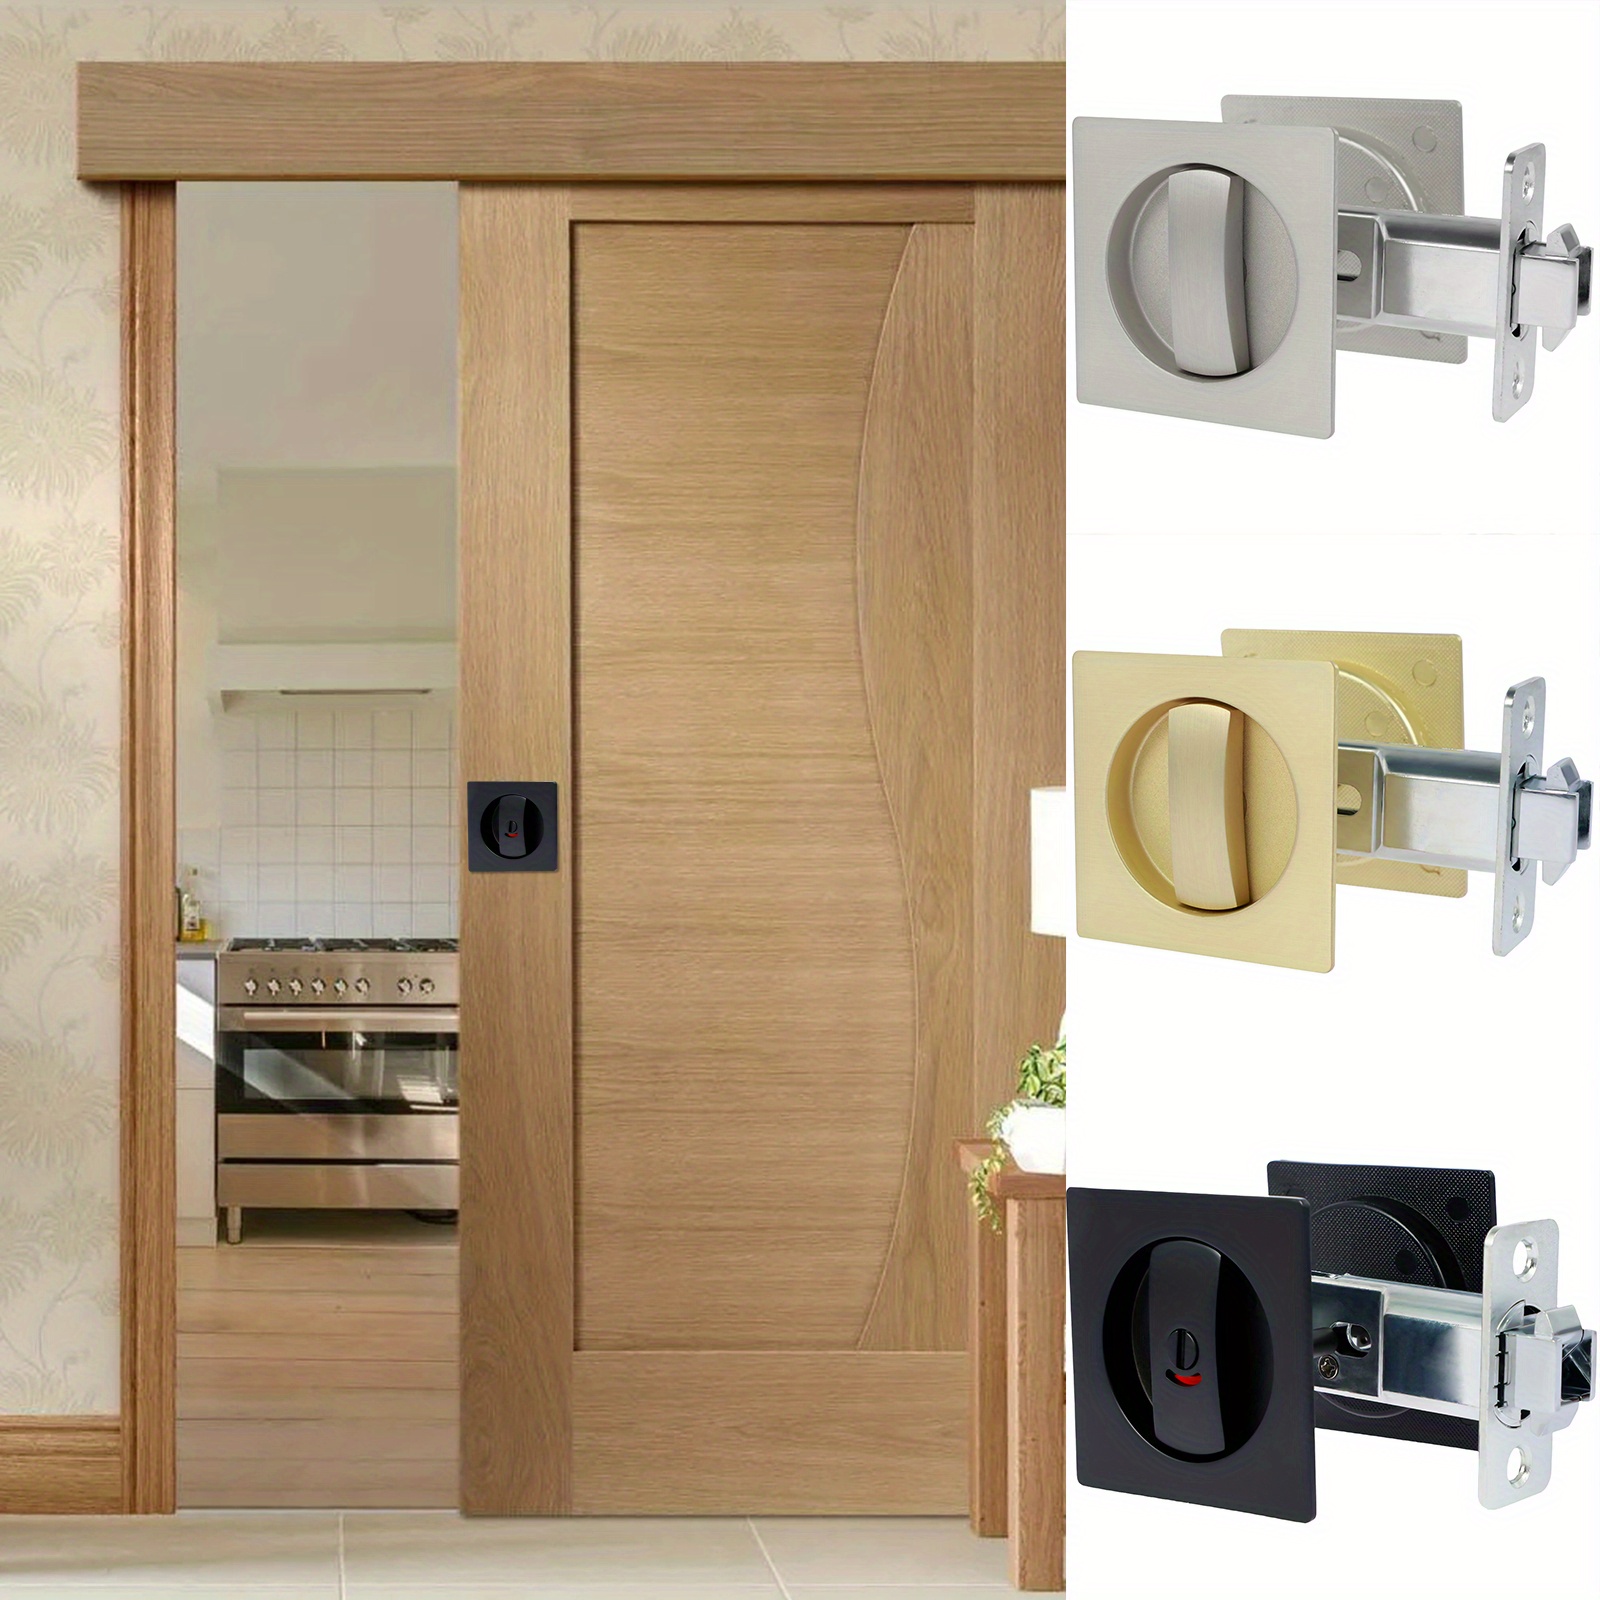 Zinc Alloy Sliding Door Locks Wooden Invisible Door Lock with 3 Keys  Furniture Hardware Latch Indoor for Bathroom Closet Kitchen Balcony(Gold) :  : Tools & Home Improvement